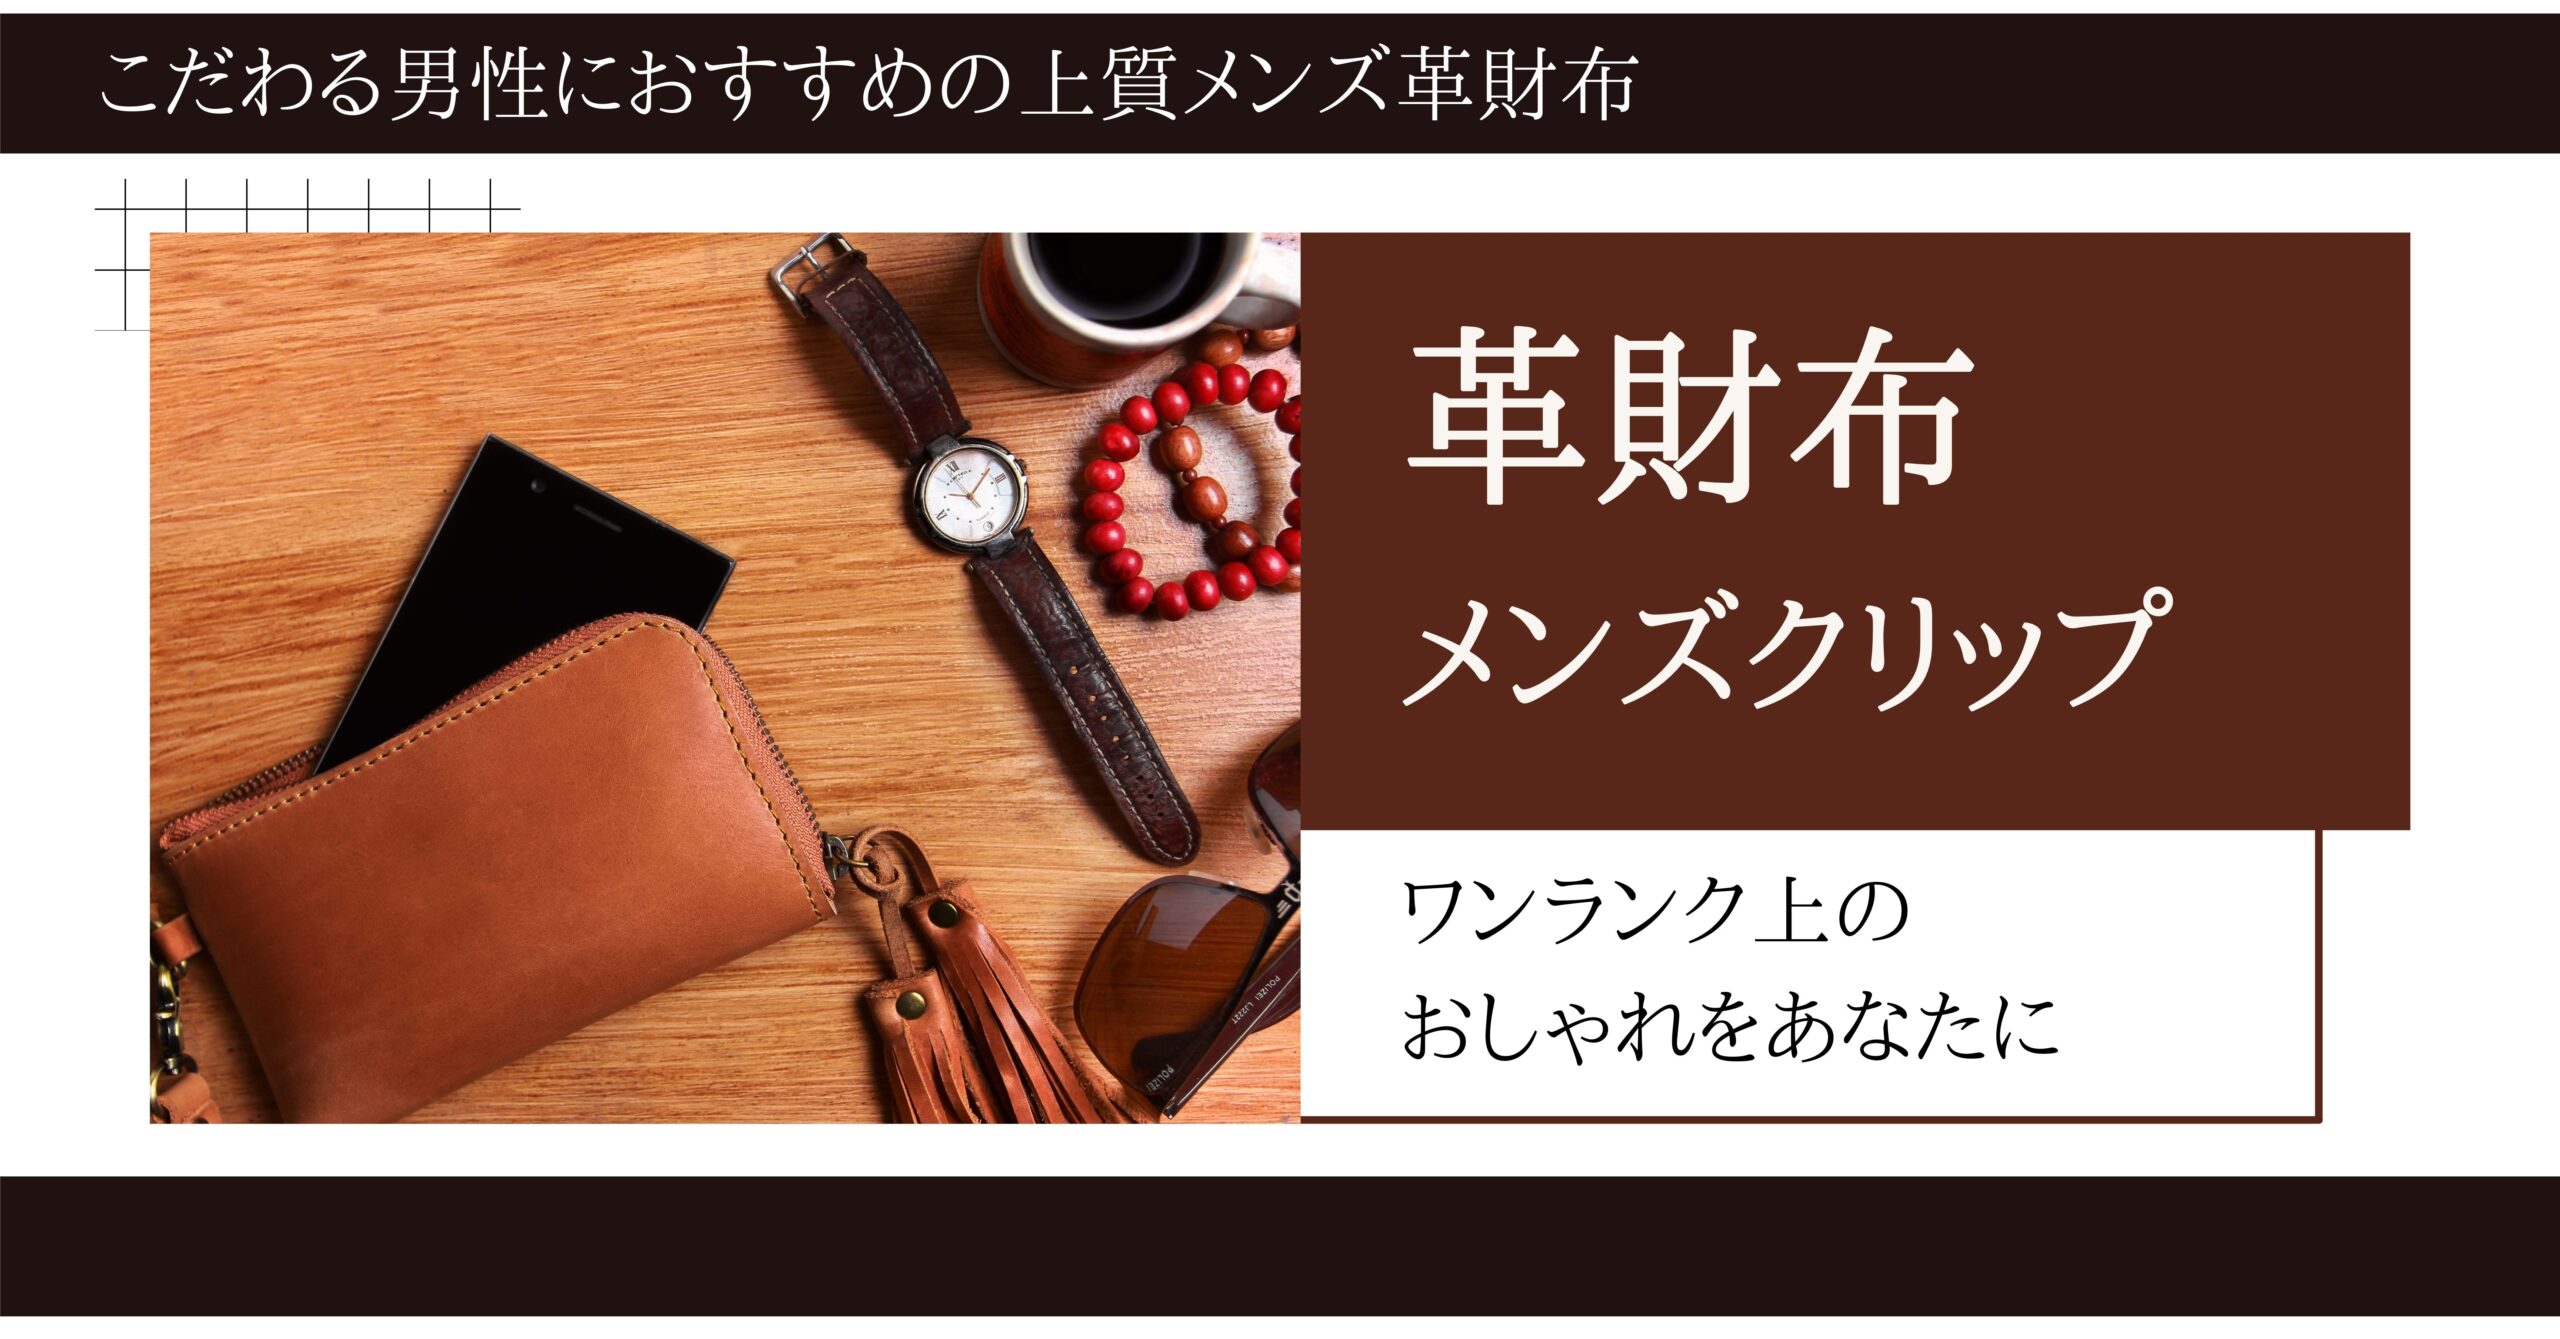 上質な日本製のメンズ革財布を厳選して紹介します